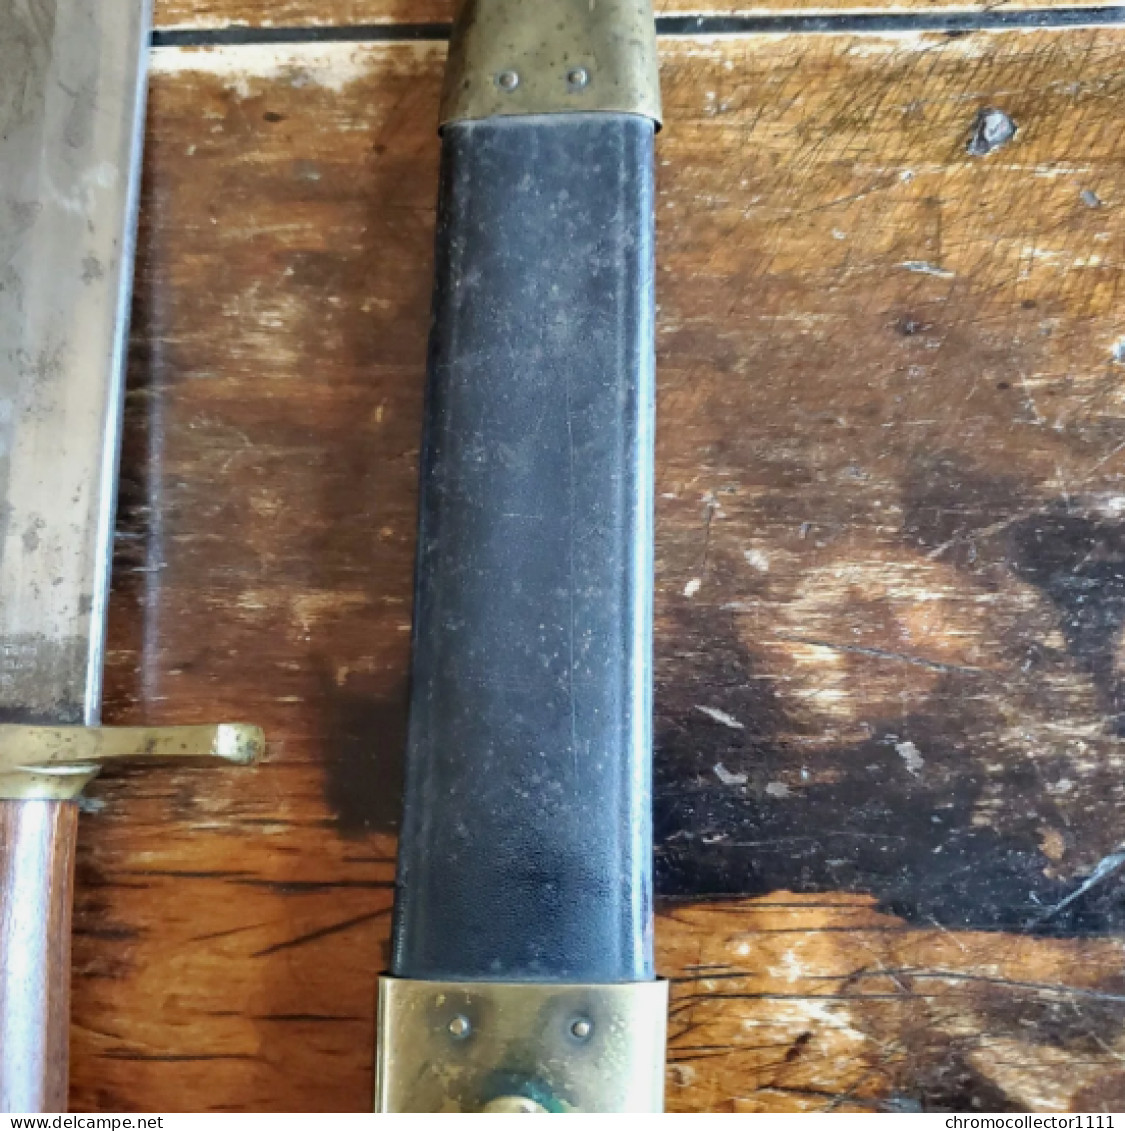 Extrêmement rare! Couteau de carabinier Ames - Modèle 1849 - Historique